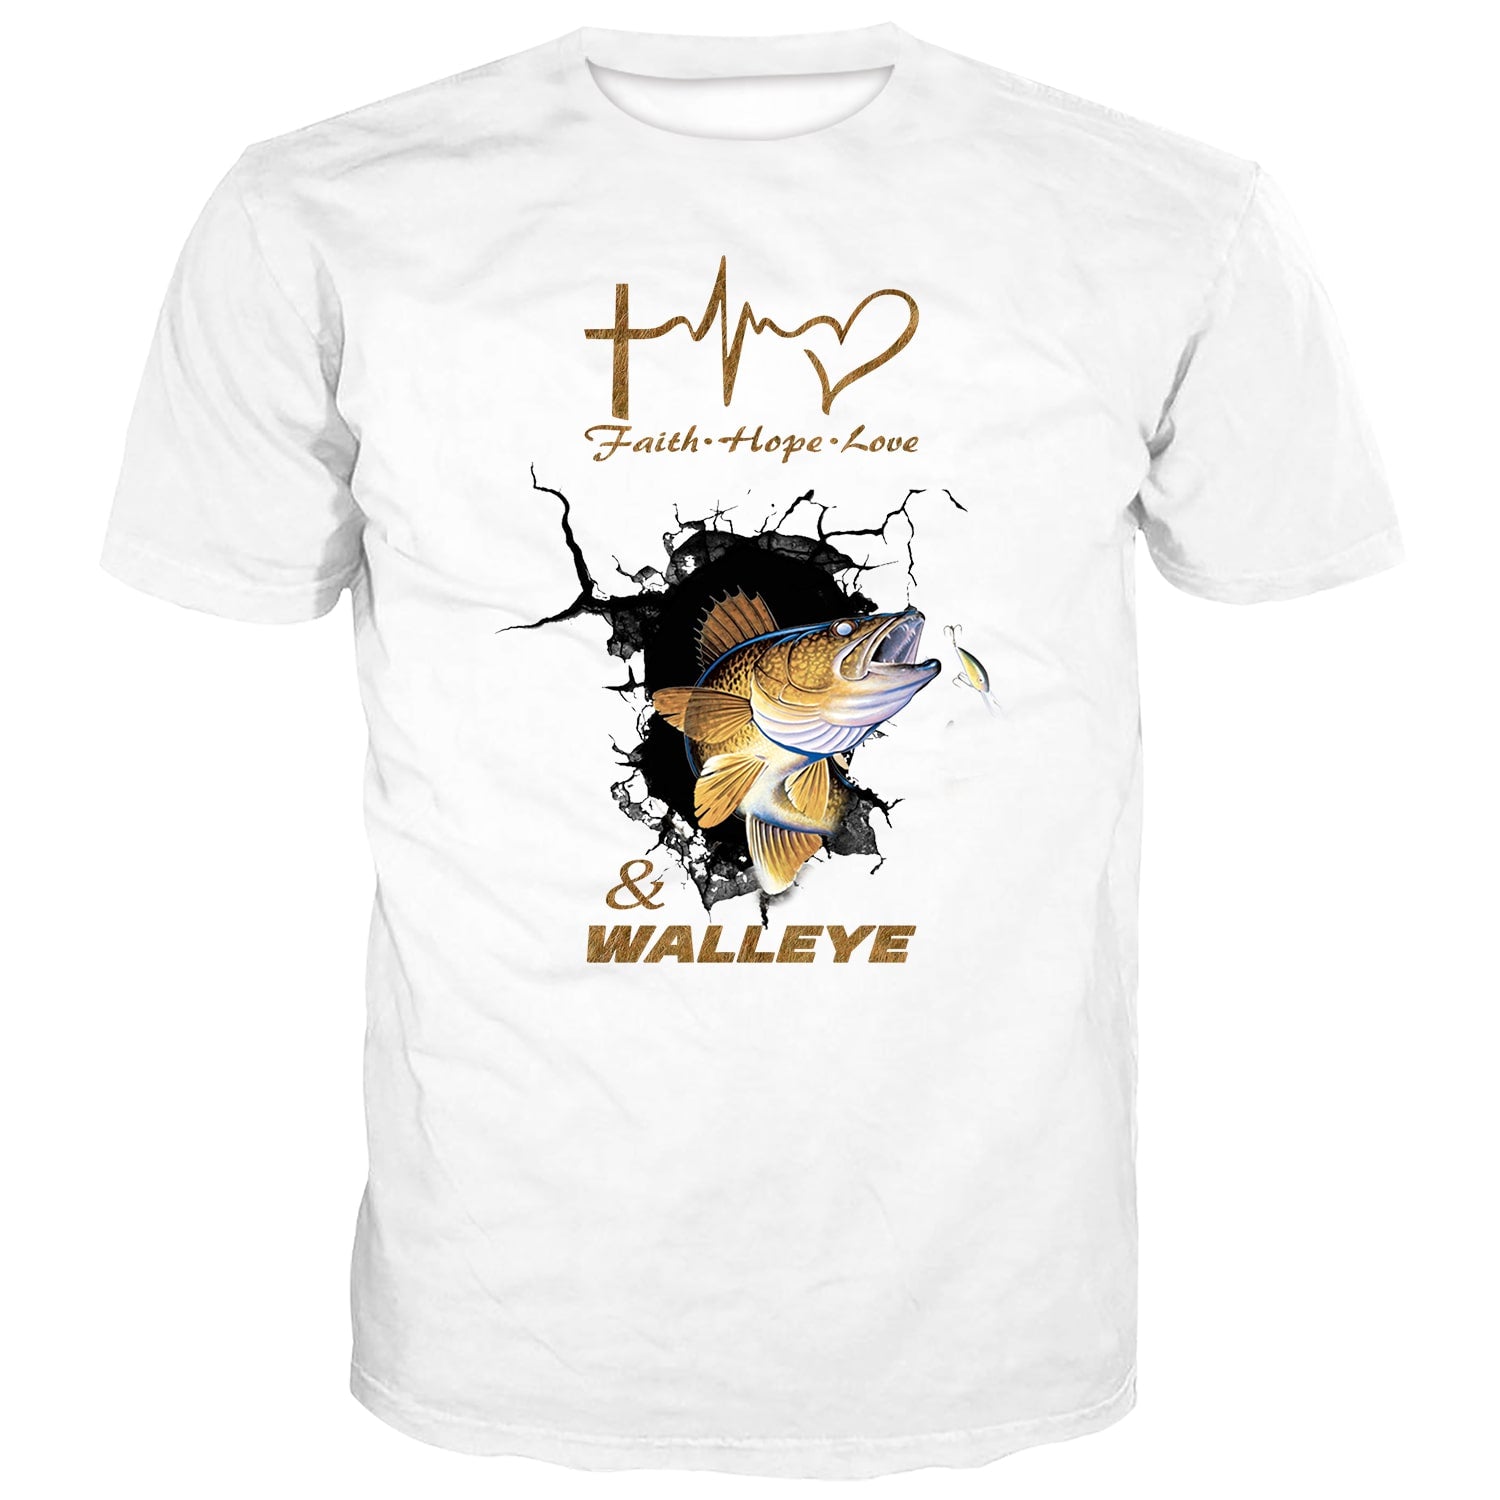 Walleye Fisher Shirt